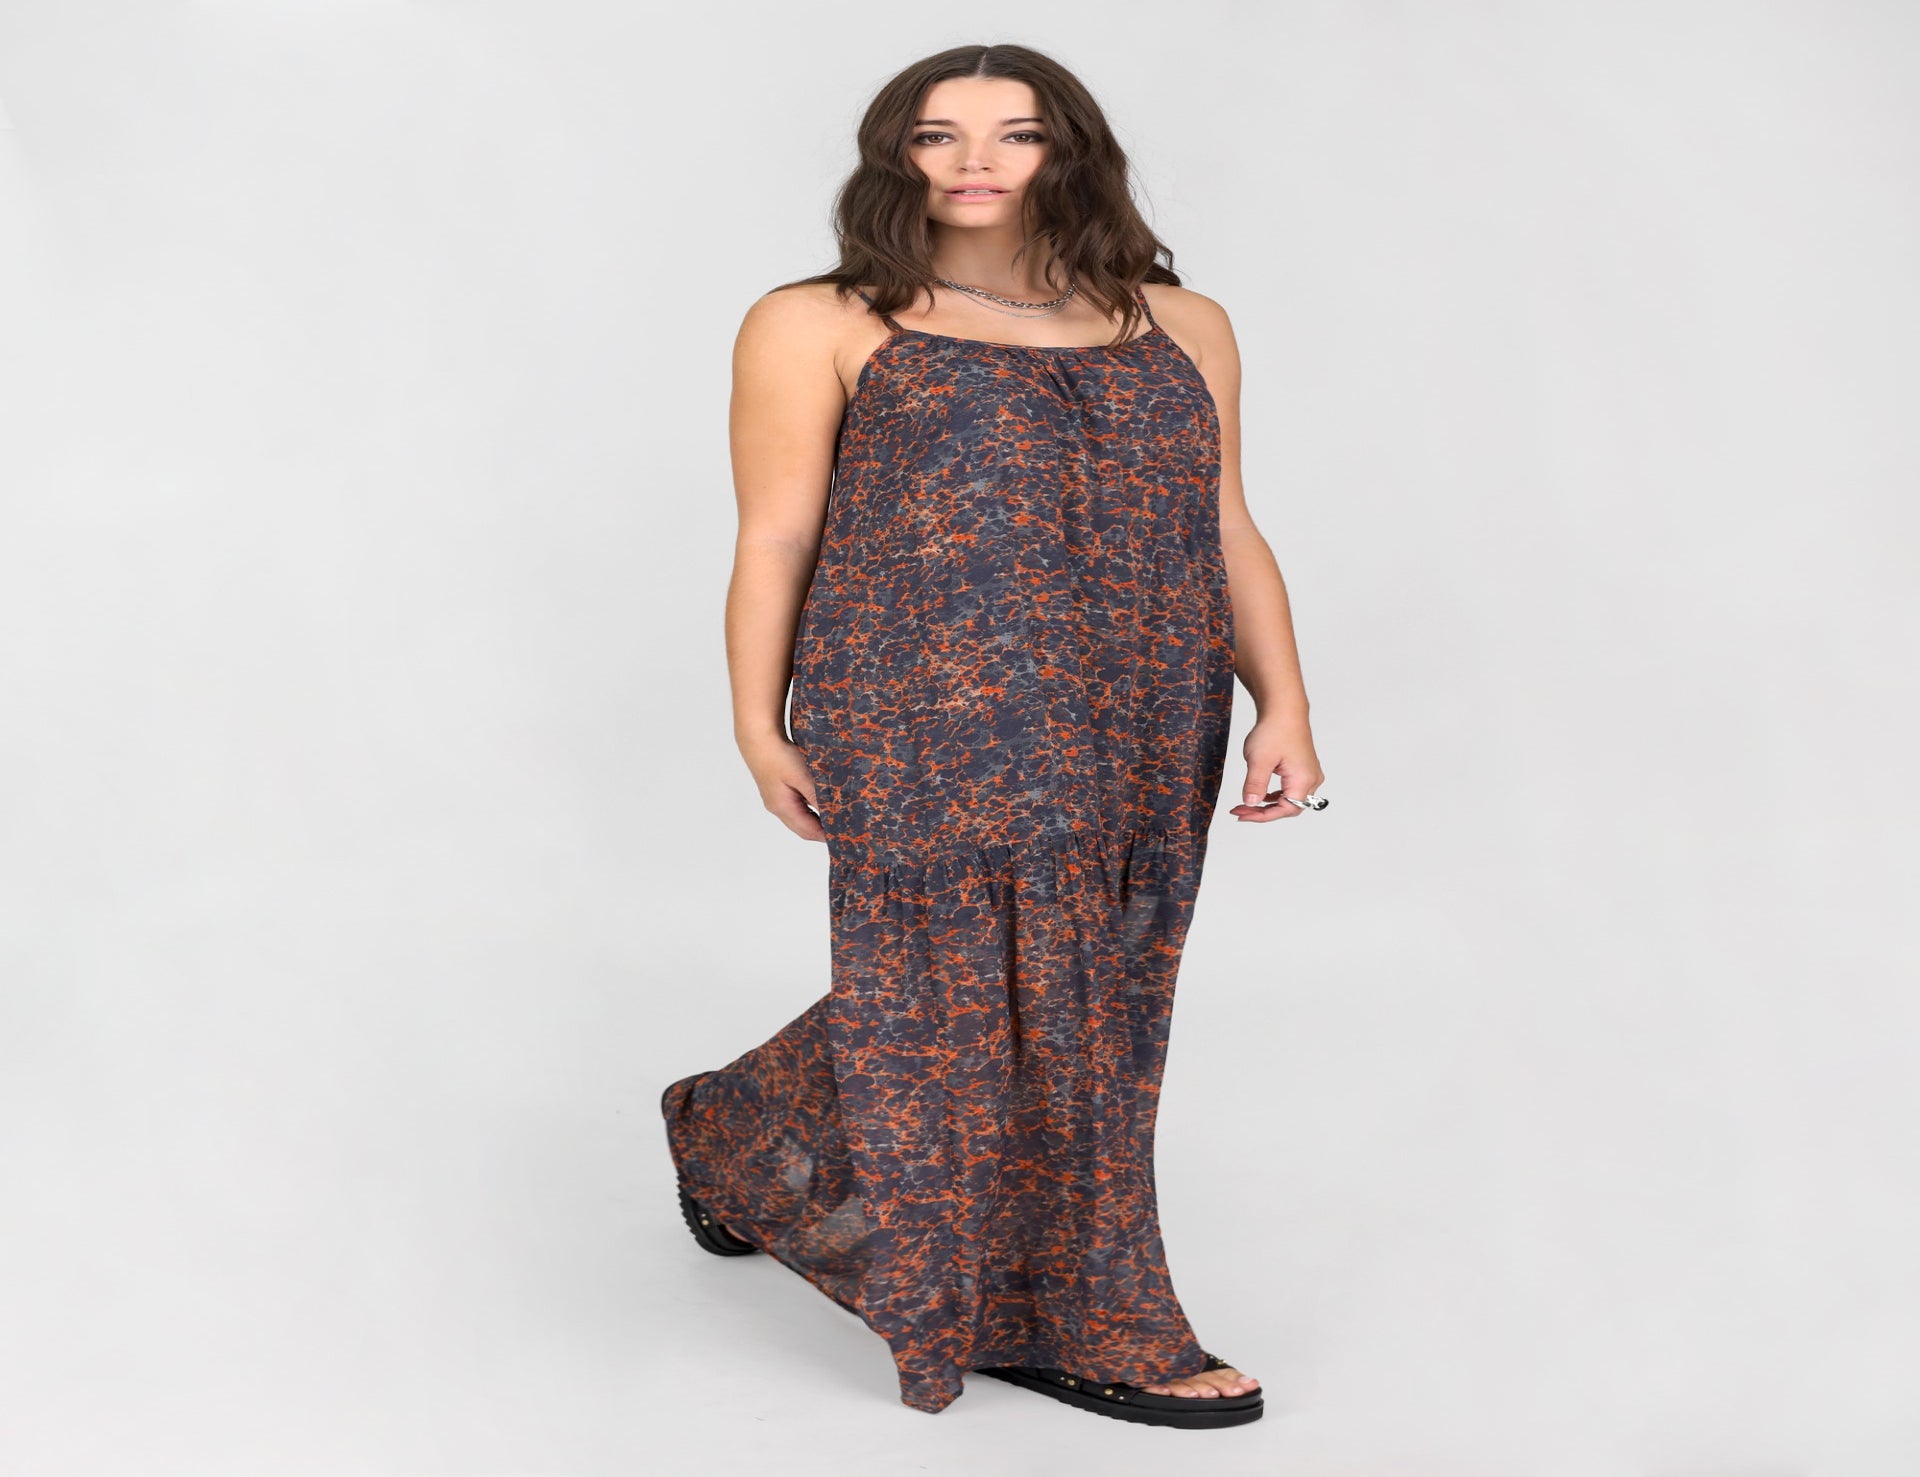 Lava Print Dress - Multi - Dresses - Midi - Women's Clothing - Storm